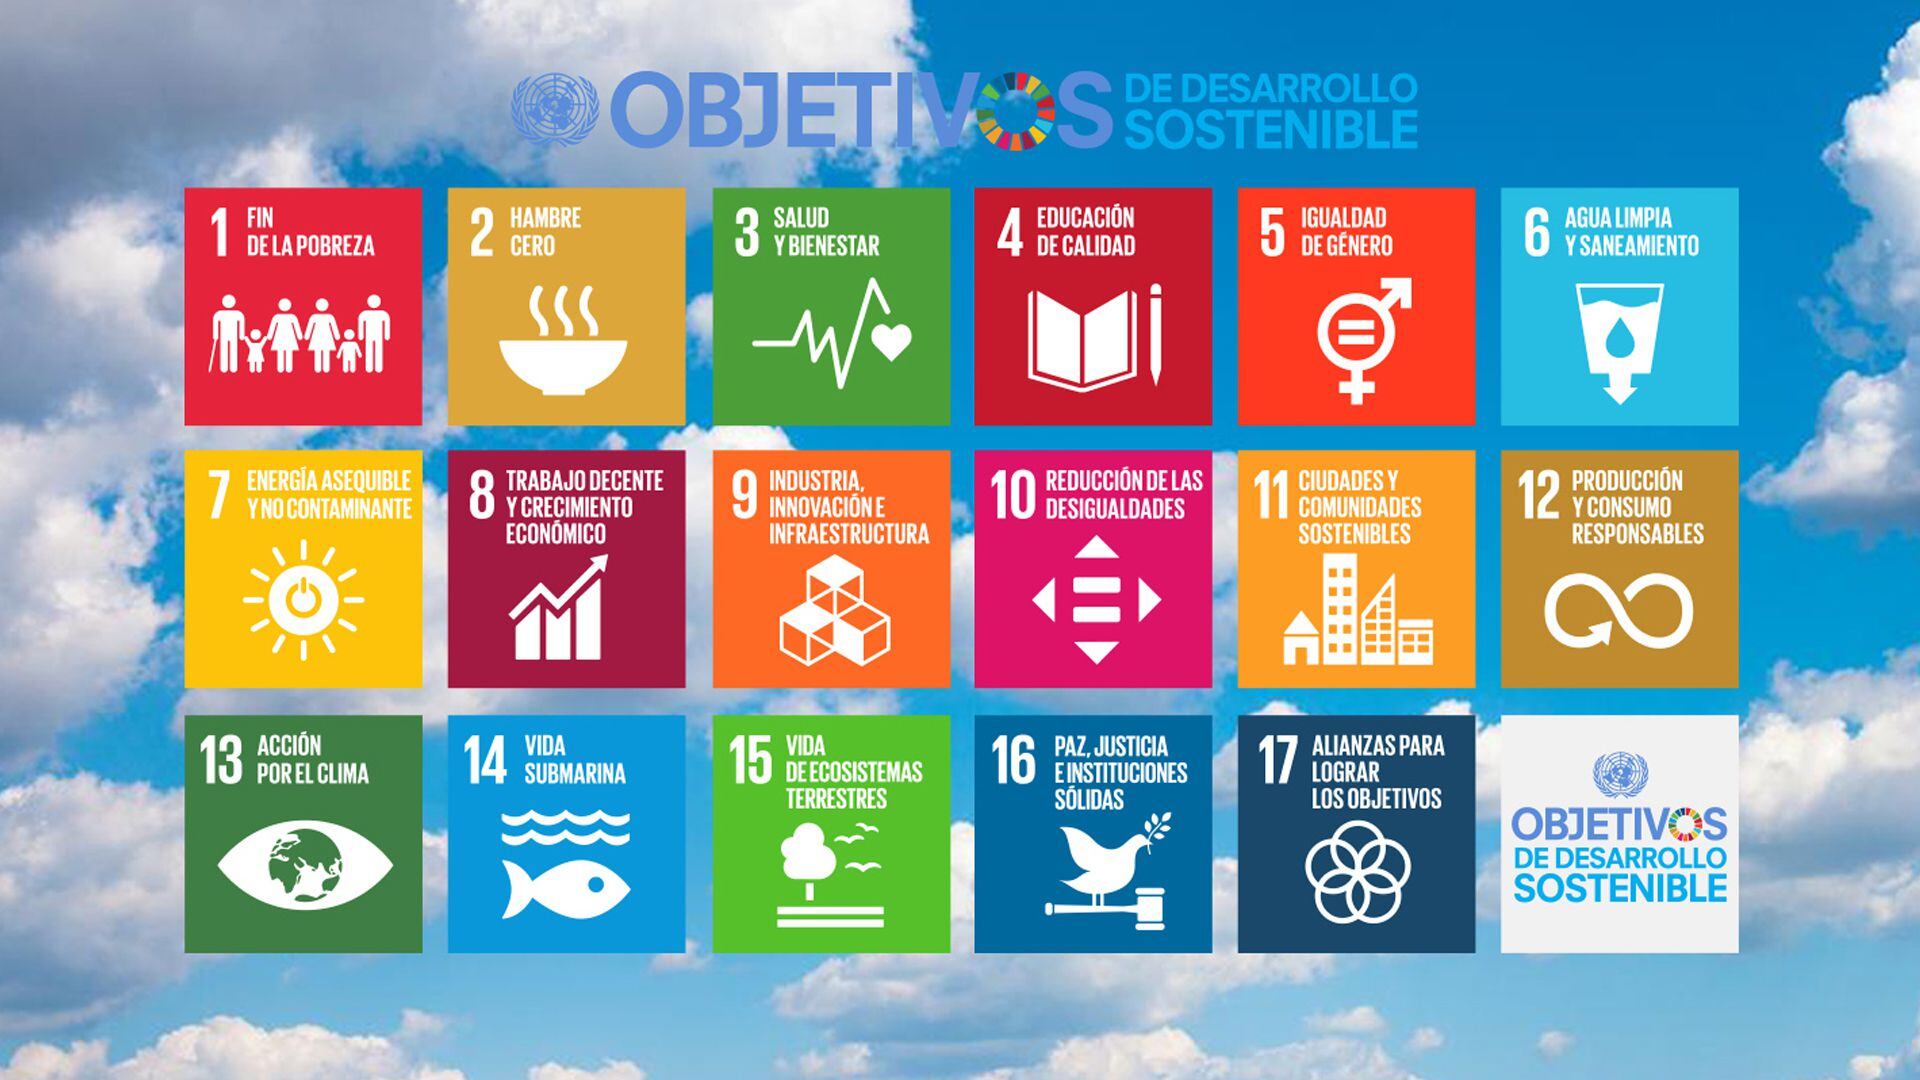 Los Objetivos de Desarrollo Sustentable se basan en 17 metas que apuntan a  terminar con la pobreza extrema, luchar contra la desigualdad y la injusticia y reparar el cambio climático. Foto: Archivo DEF.